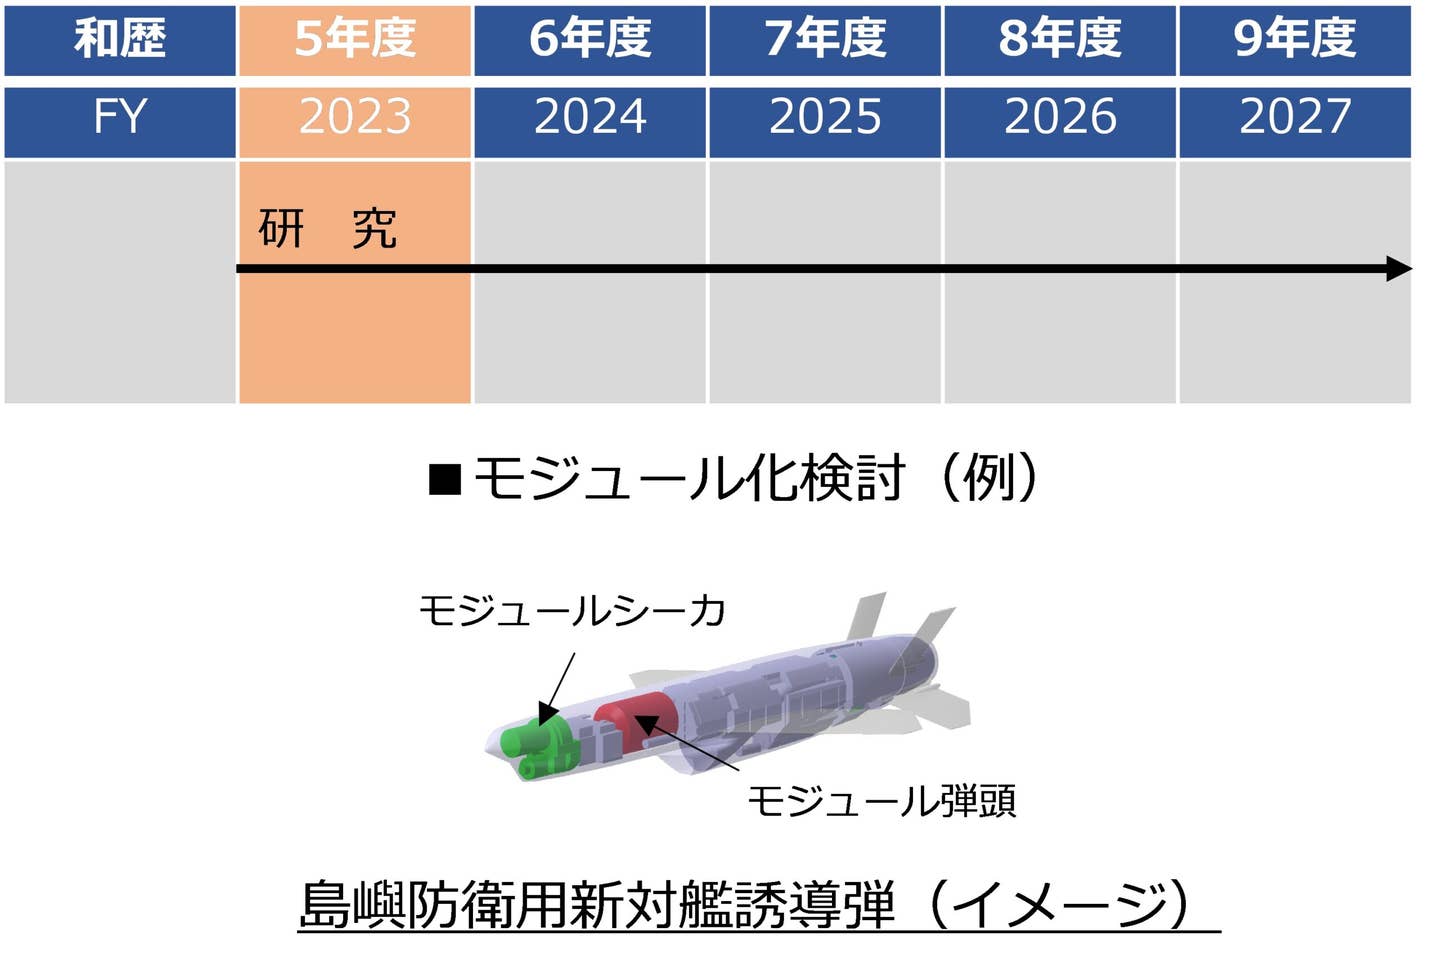 일본의 새로운 SSM cutaway